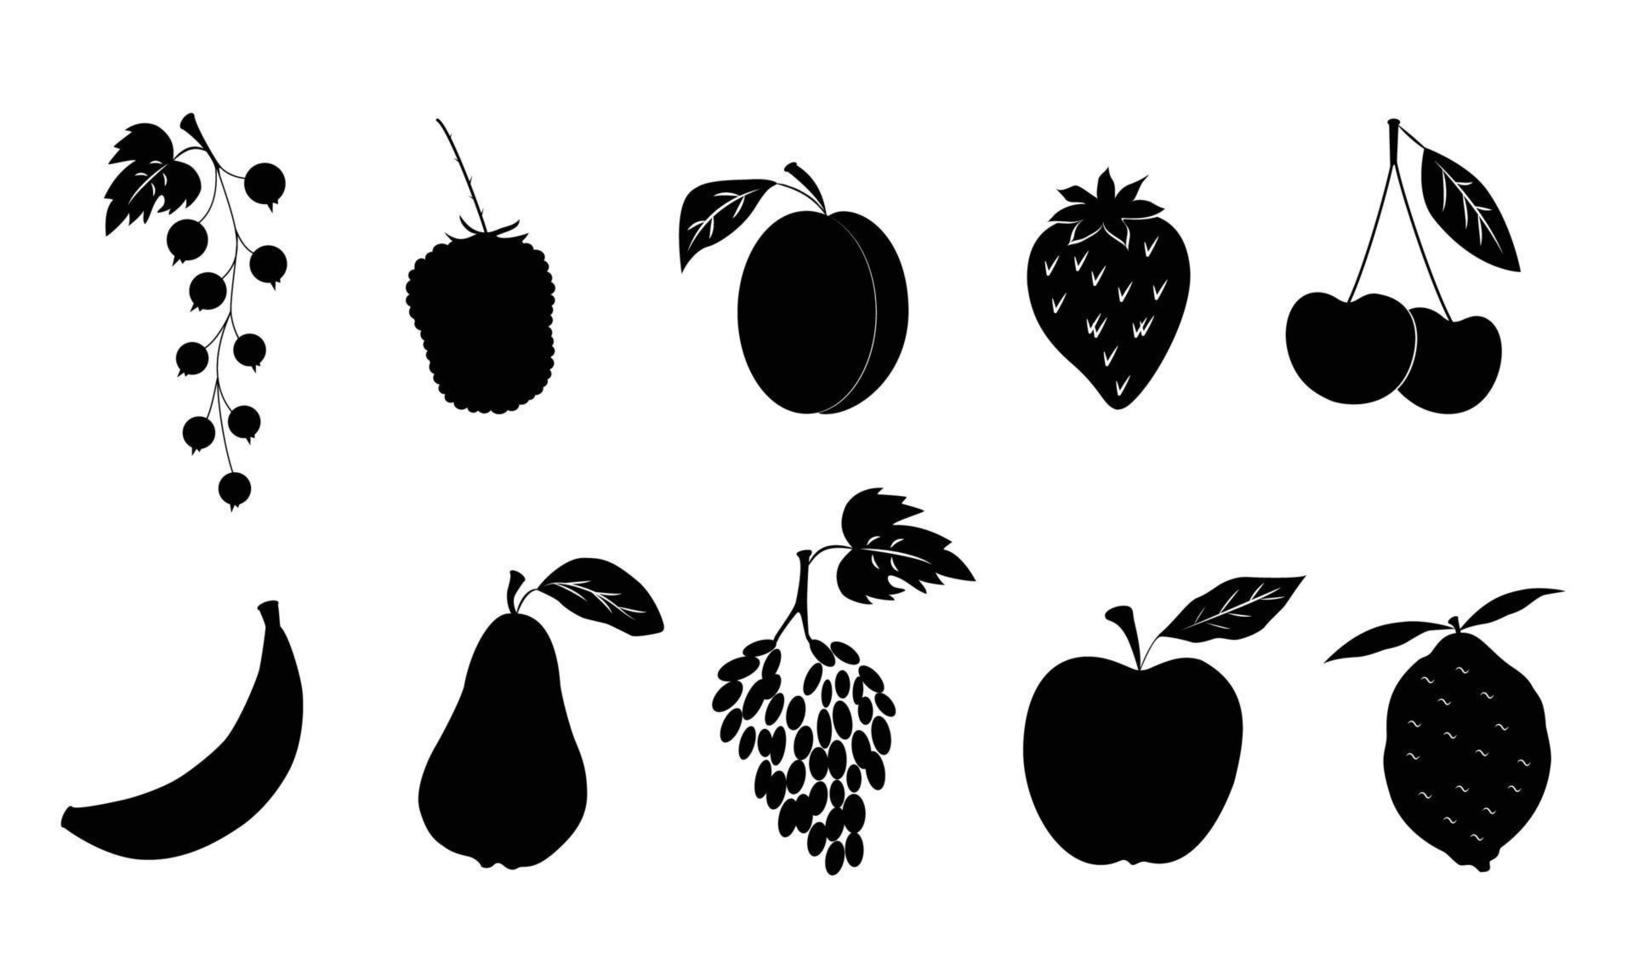 svarta silhuetter på en vit bakgrund, olika frukter och bär, äpple, päron, aprikos, vinbär, körsbär. vektor illustration.